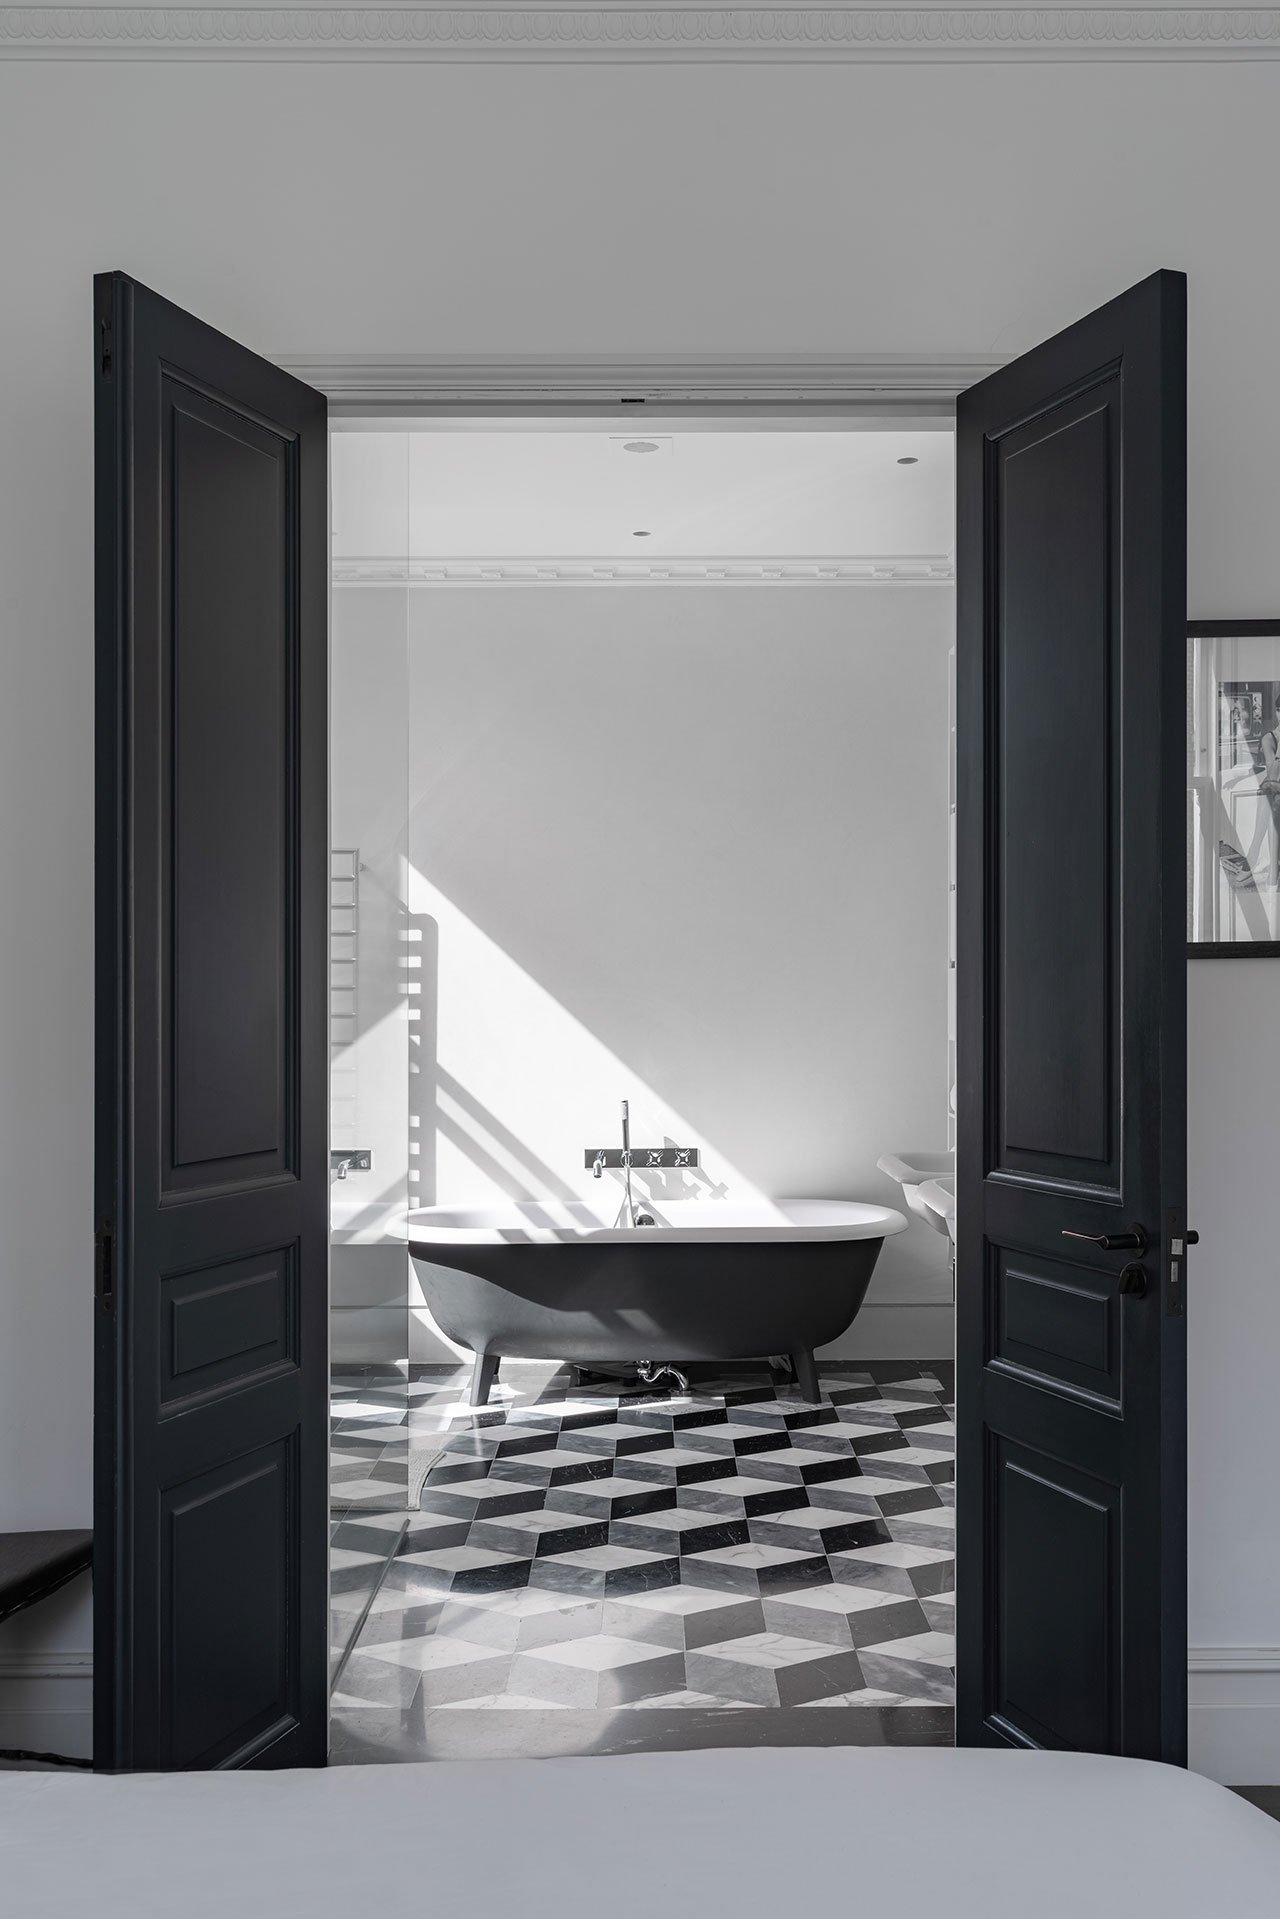 Bồn tắm nằm thiết kế cổ điển với gam màu trắng đen sang trọng, phối hợp hài hòa của cánh cửa đen - tường trắng, sàn nhà lát gạch trắng đen xám, kể cả bức ảnh bên ngoài cũng theo phong cách này.